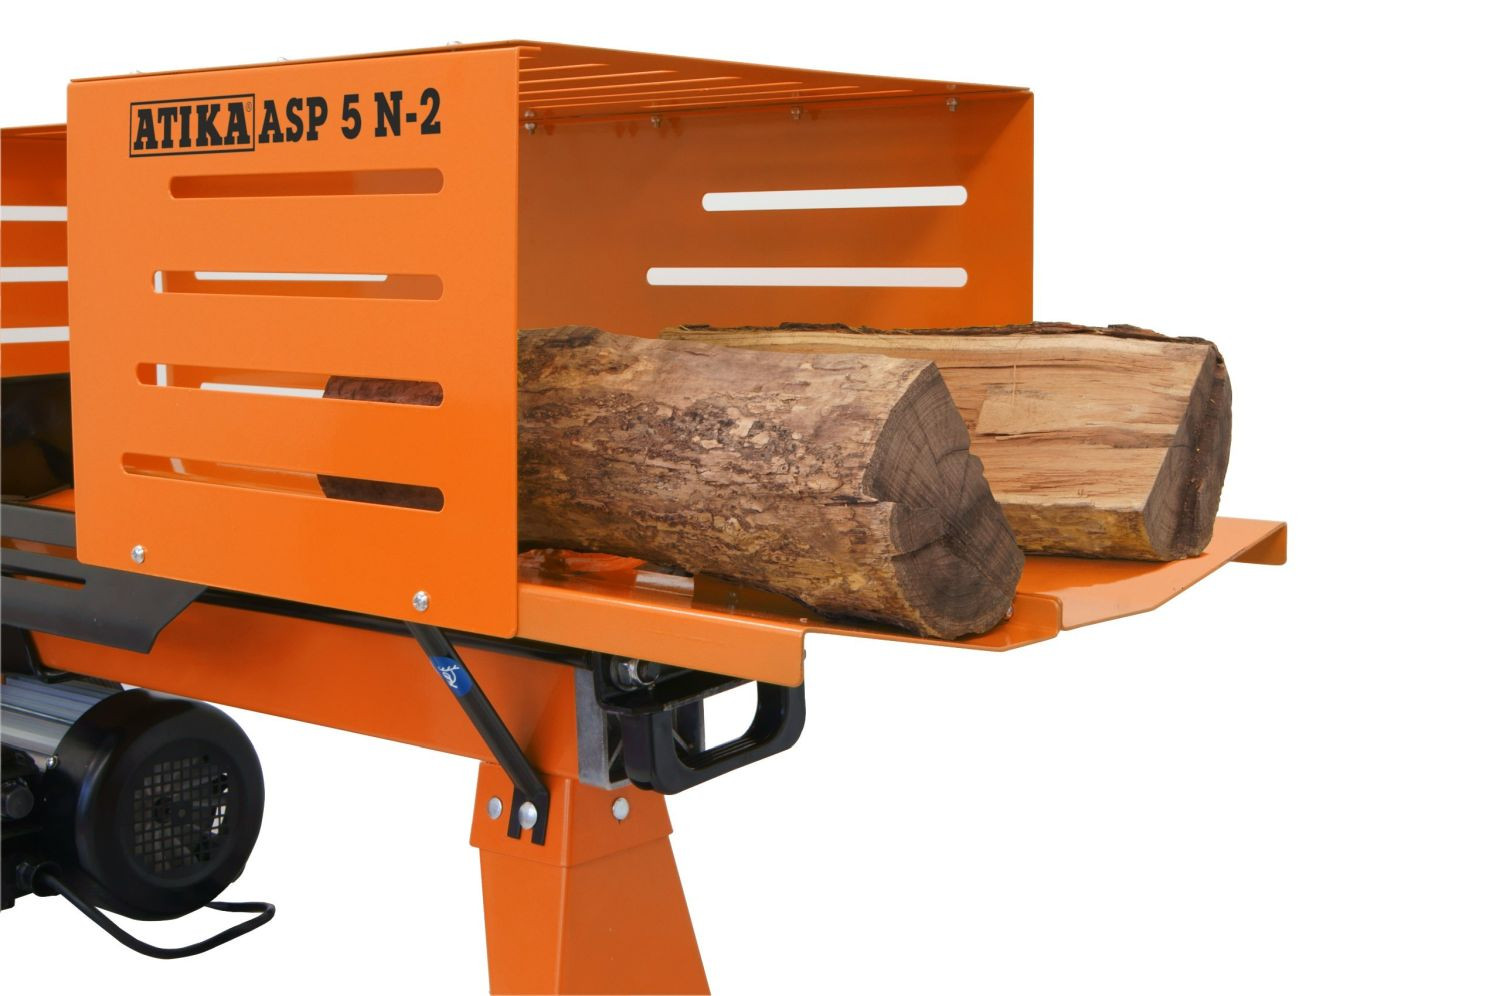 ATIKA ASP 5N-2 Holzspalter Brennholzspalter 230 V zur sicheren und bequemen Brennholz-Aufbereitung 